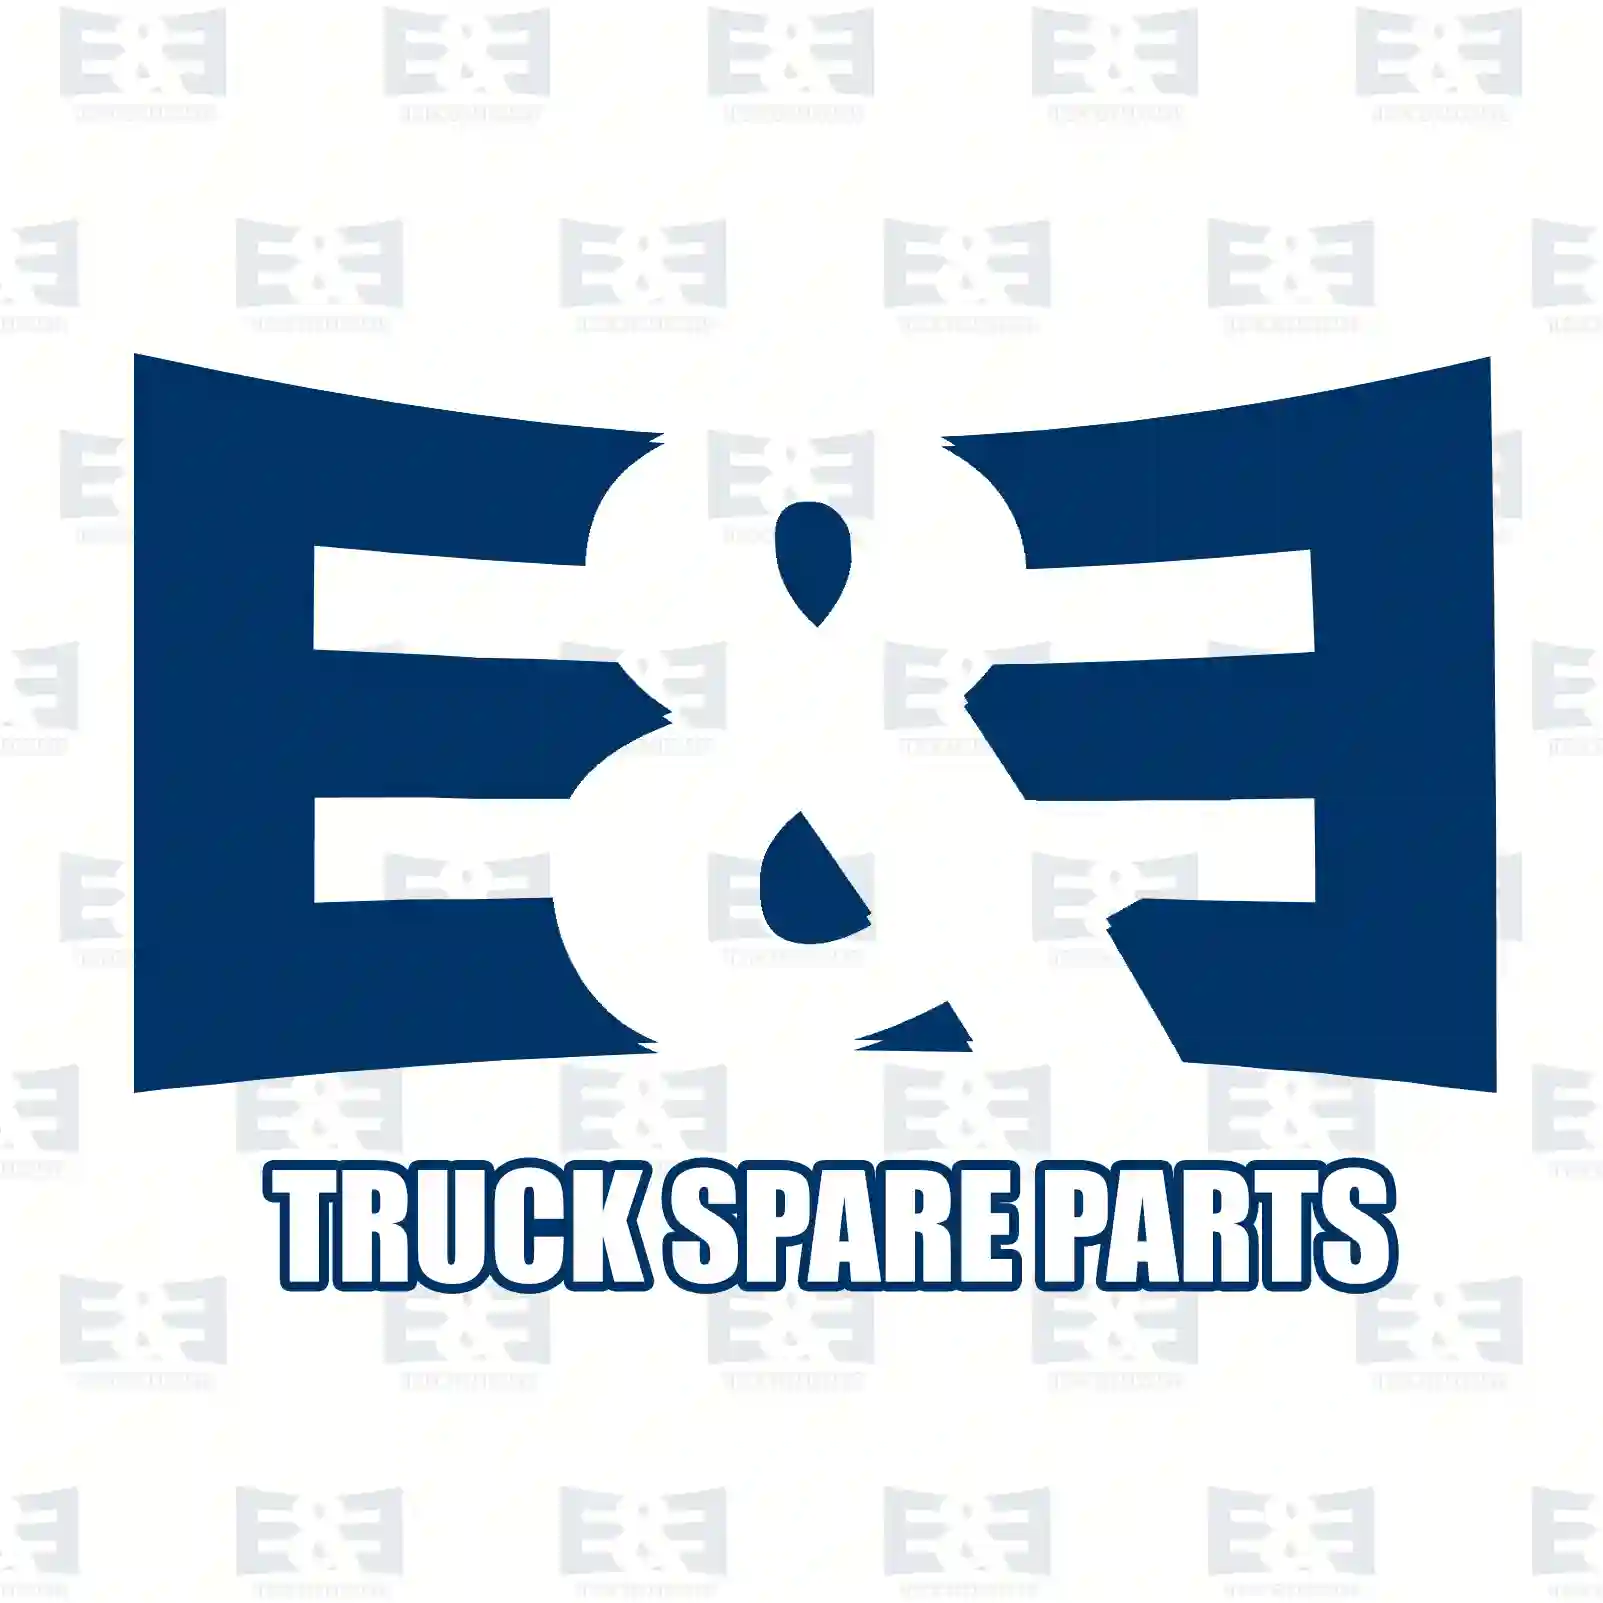 Multiribbed belt, 2E2285910, 5132825AA, 53012009, 53013298AA, 68027636AA, 53012009, 53013298AA, 68027636AA, LF1915909B, LF9J15909A, 0089977092, 4623872, 0089977092, 6659970392 ||  2E2285910 E&E Truck Spare Parts | Truck Spare Parts, Auotomotive Spare Parts Multiribbed belt, 2E2285910, 5132825AA, 53012009, 53013298AA, 68027636AA, 53012009, 53013298AA, 68027636AA, LF1915909B, LF9J15909A, 0089977092, 4623872, 0089977092, 6659970392 ||  2E2285910 E&E Truck Spare Parts | Truck Spare Parts, Auotomotive Spare Parts